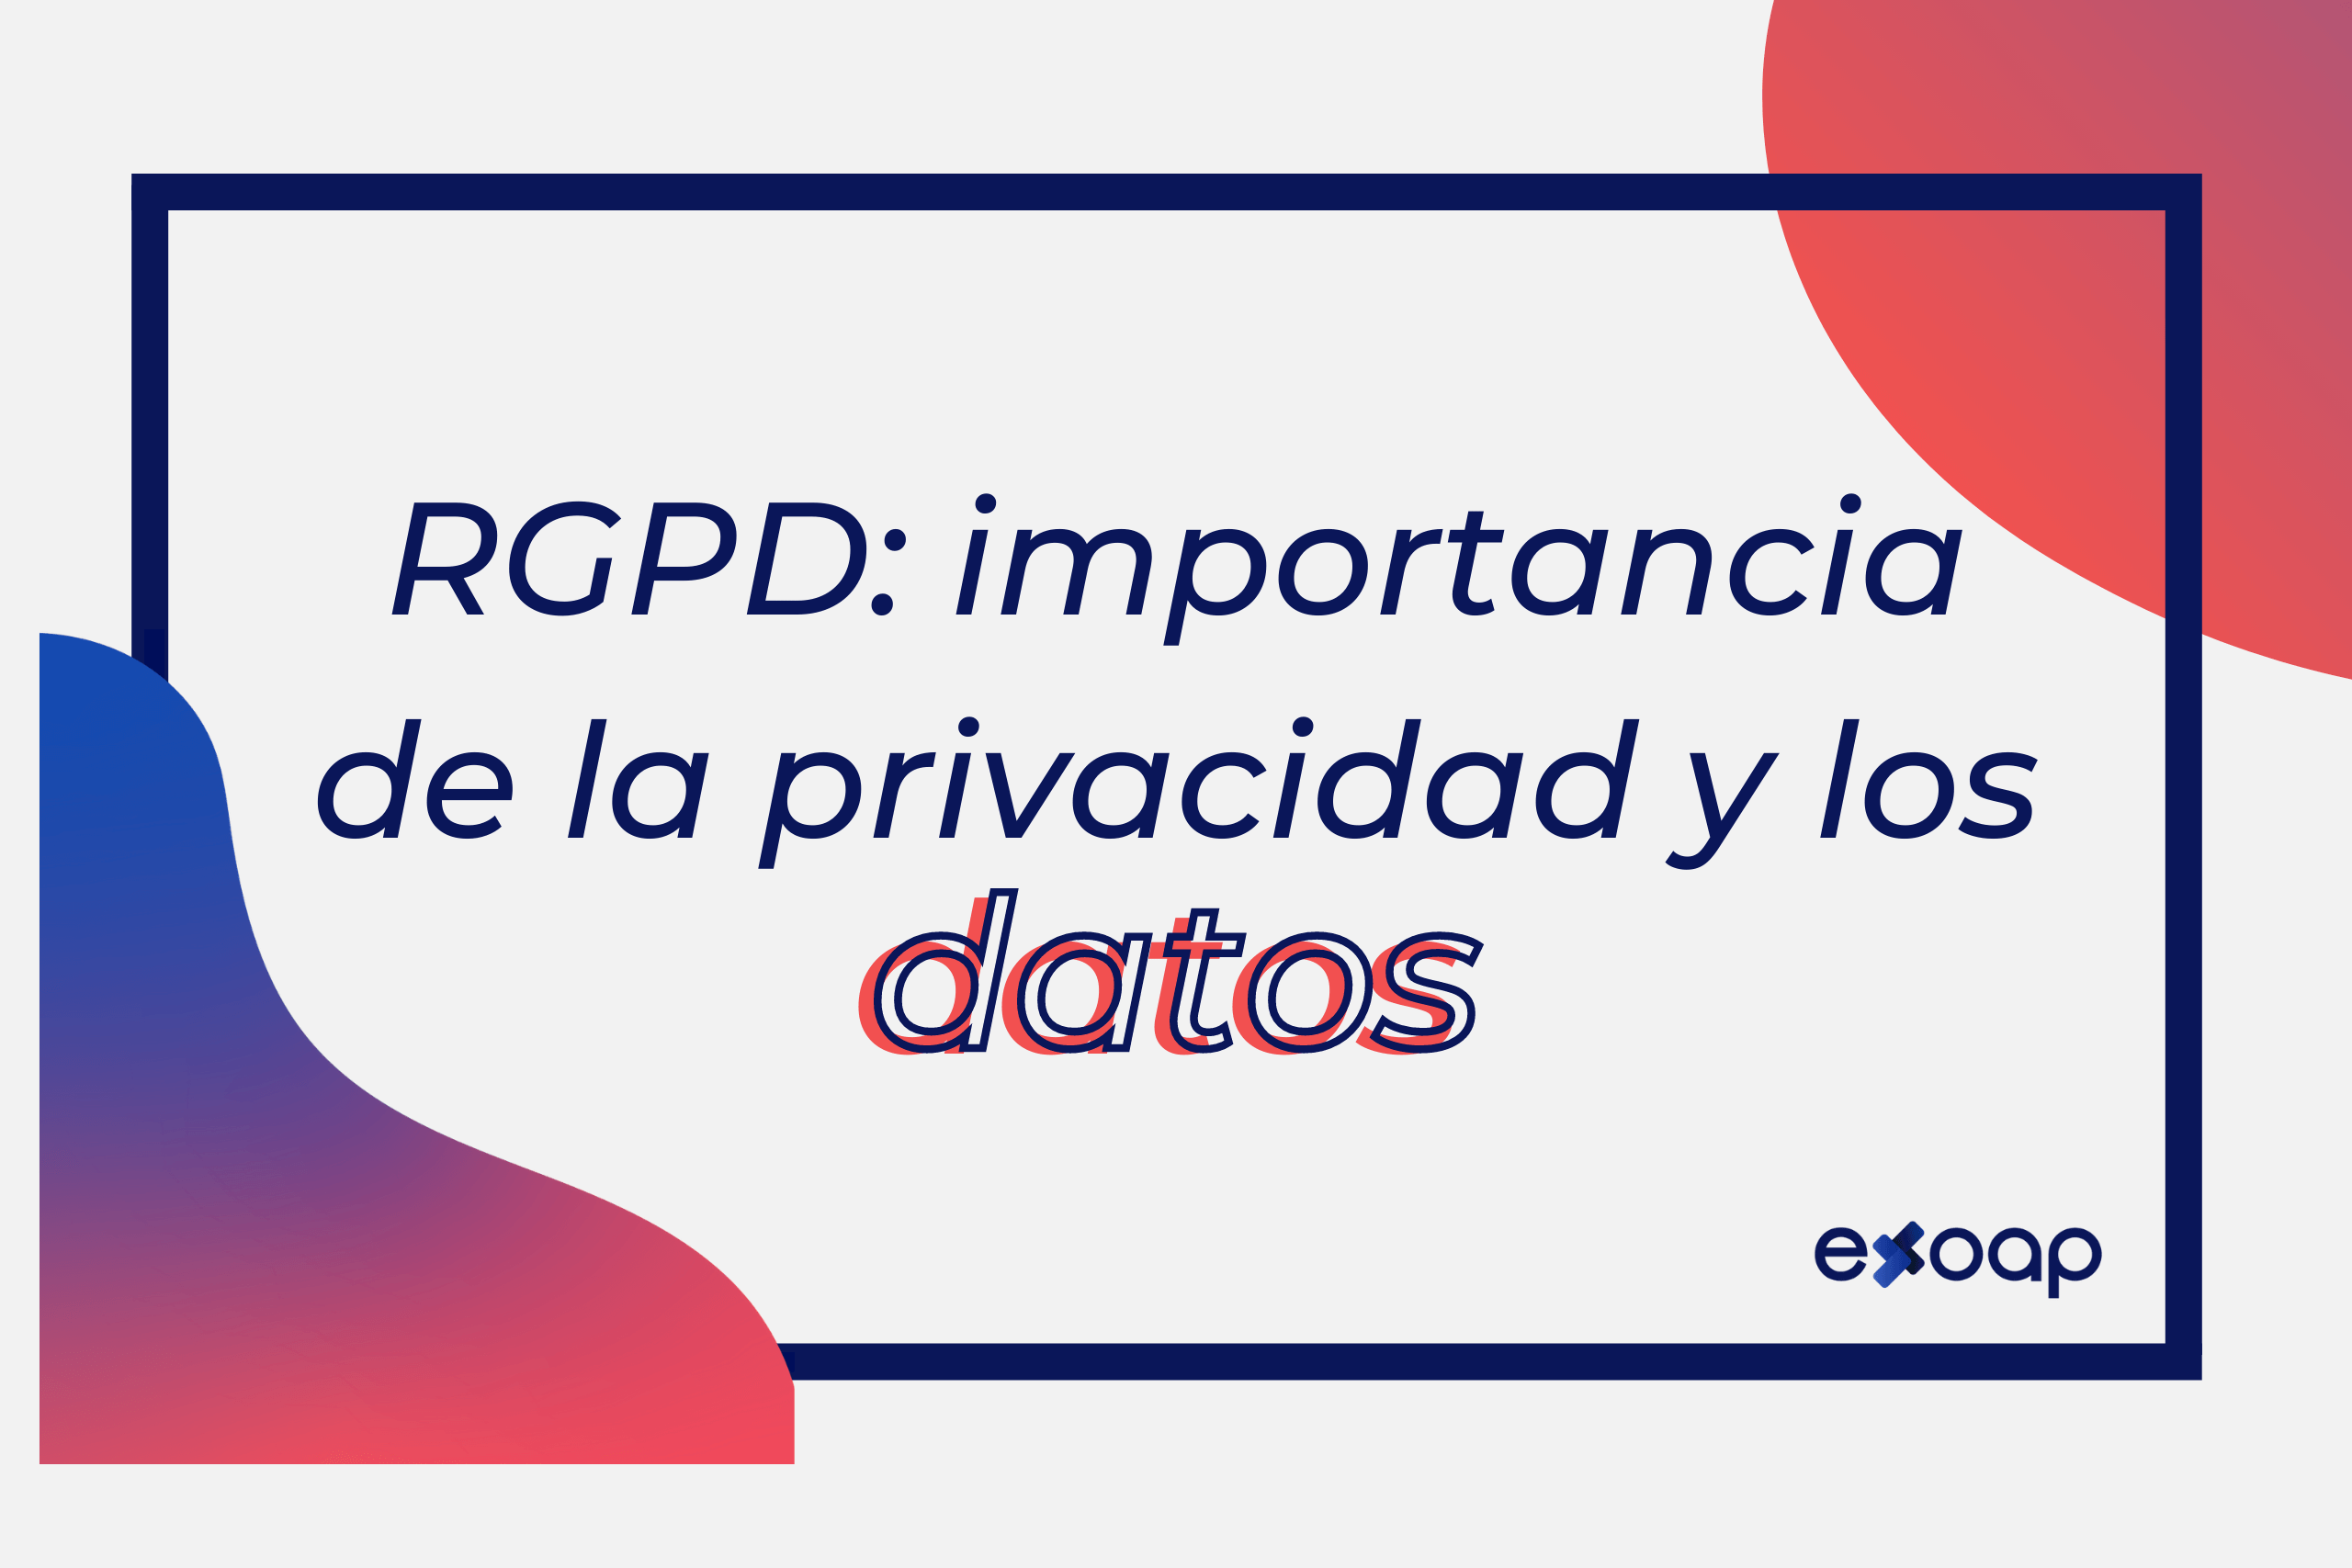 RGPD: importancia de la privacidad y los datos